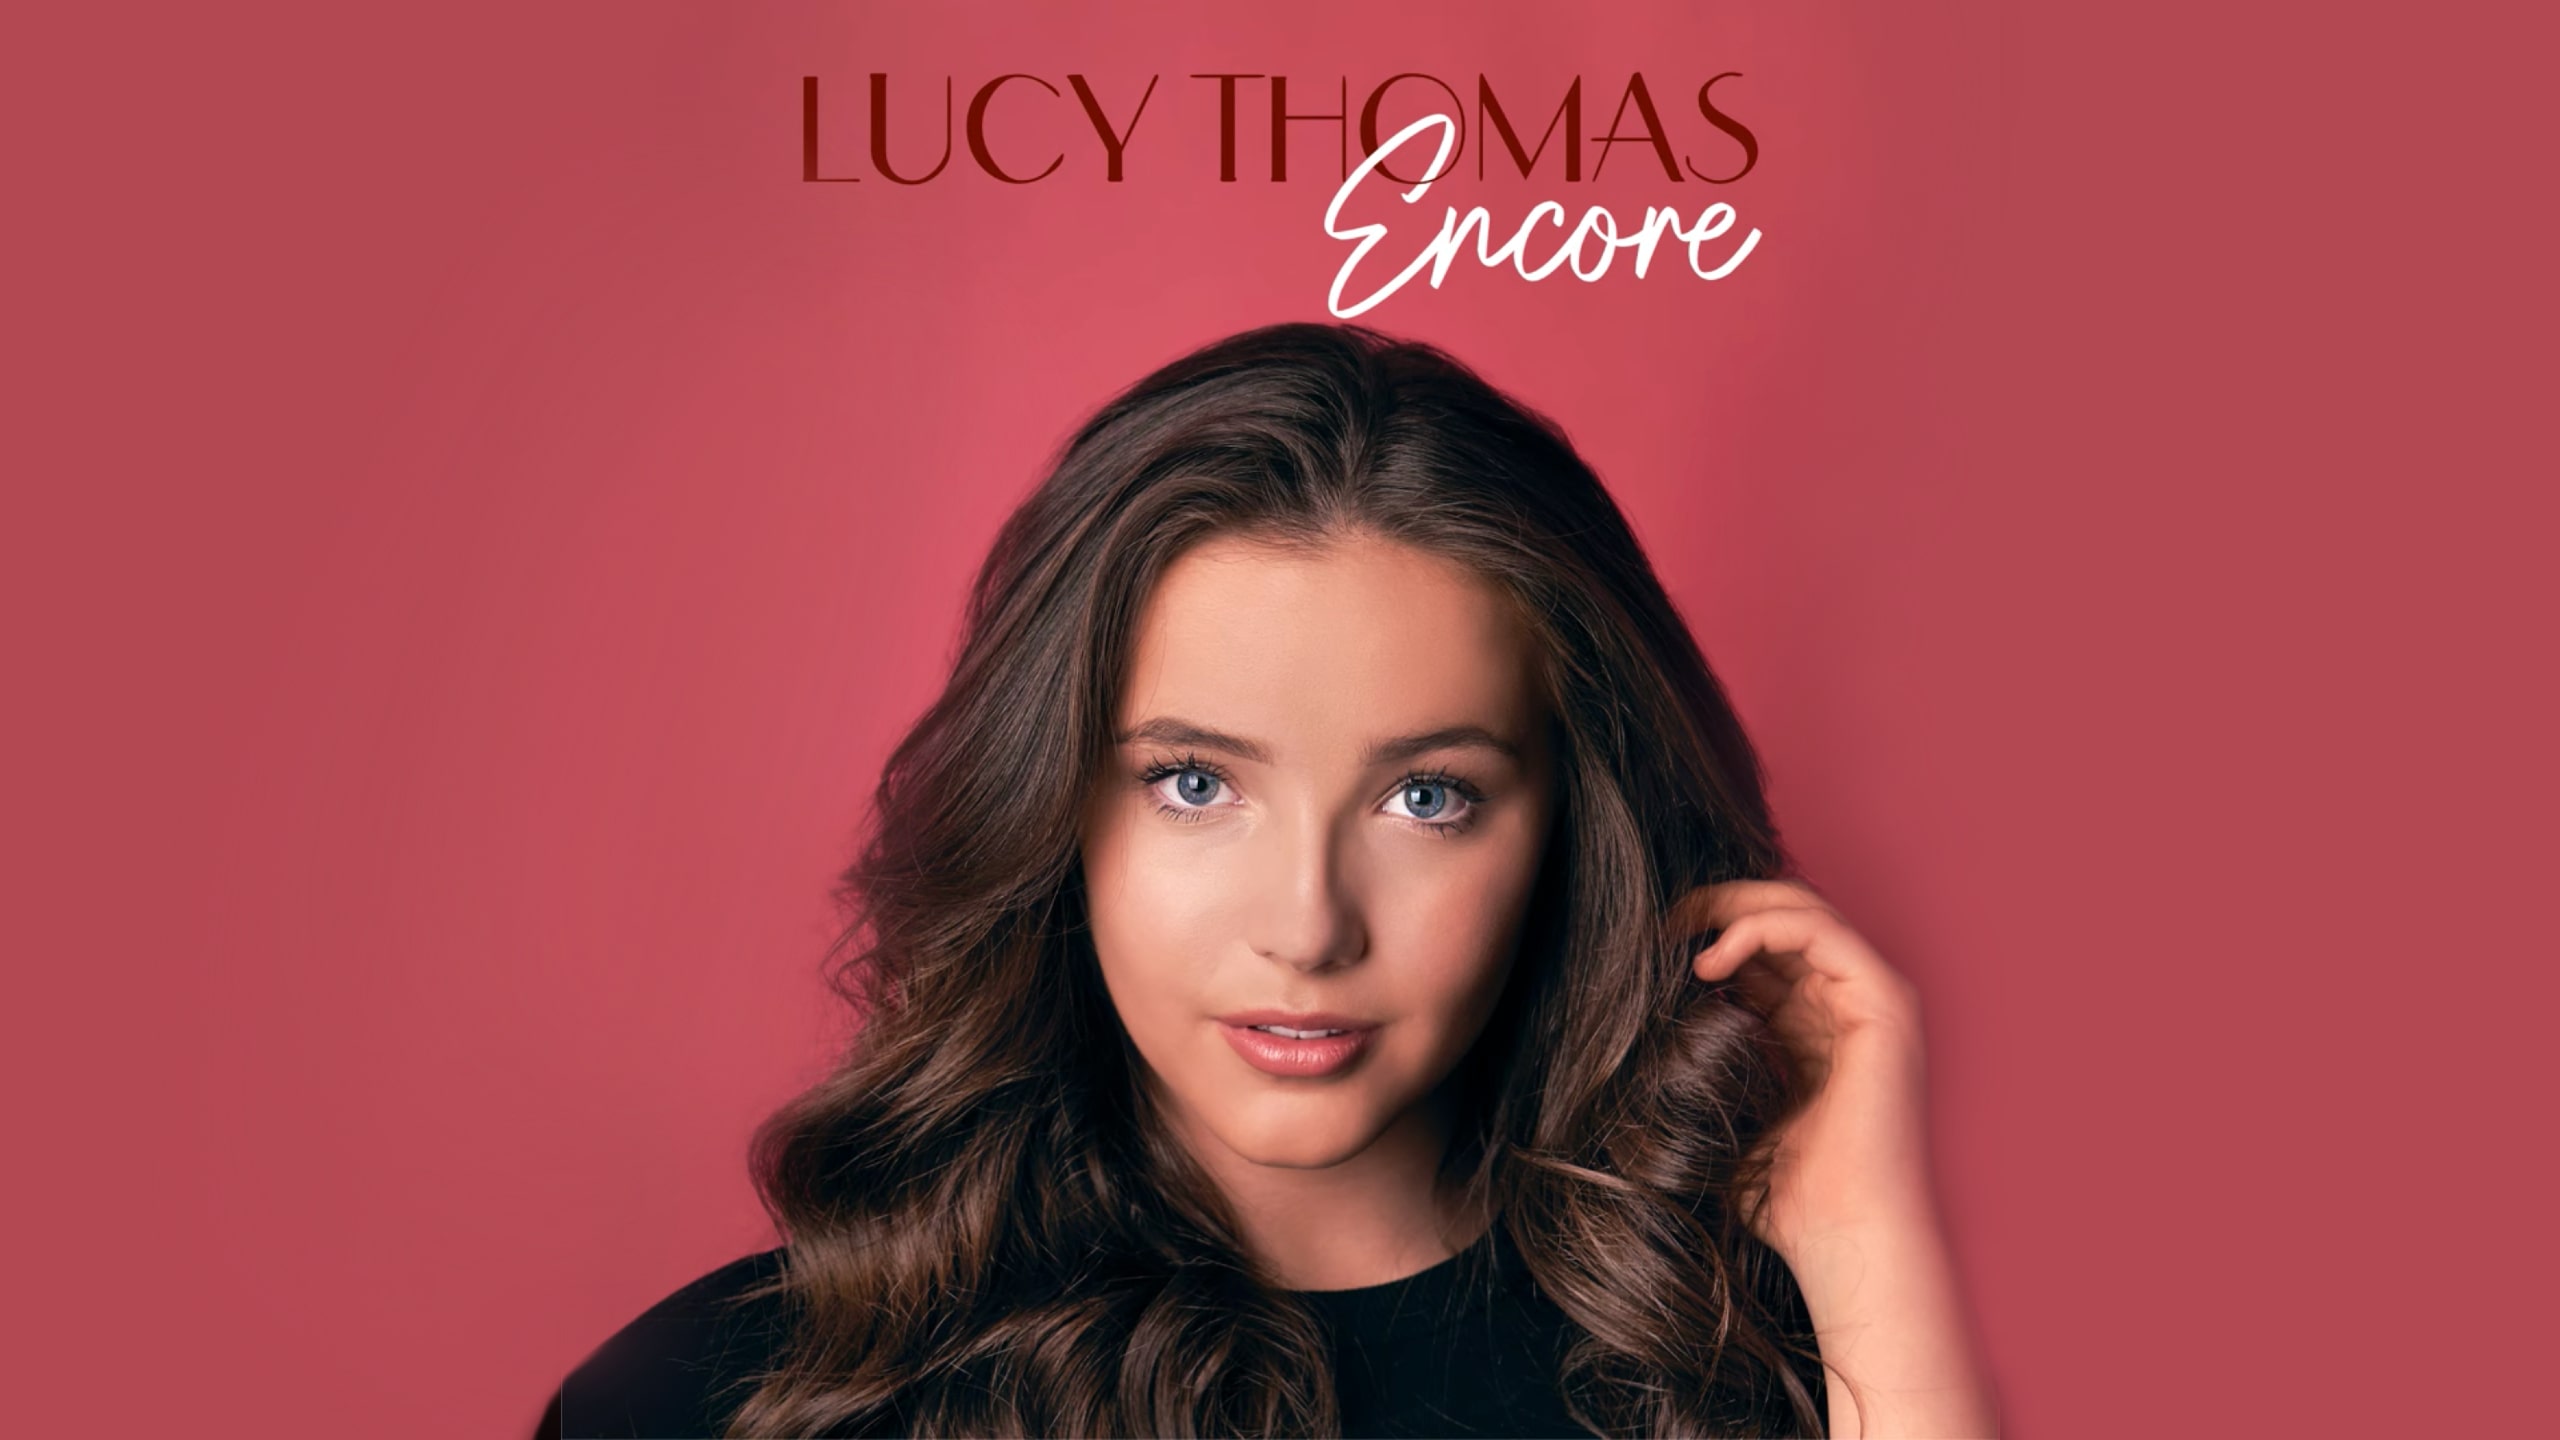 16歳ルーシー・トーマス、煌びやかなミュージカル&バラード名曲集『Encore』